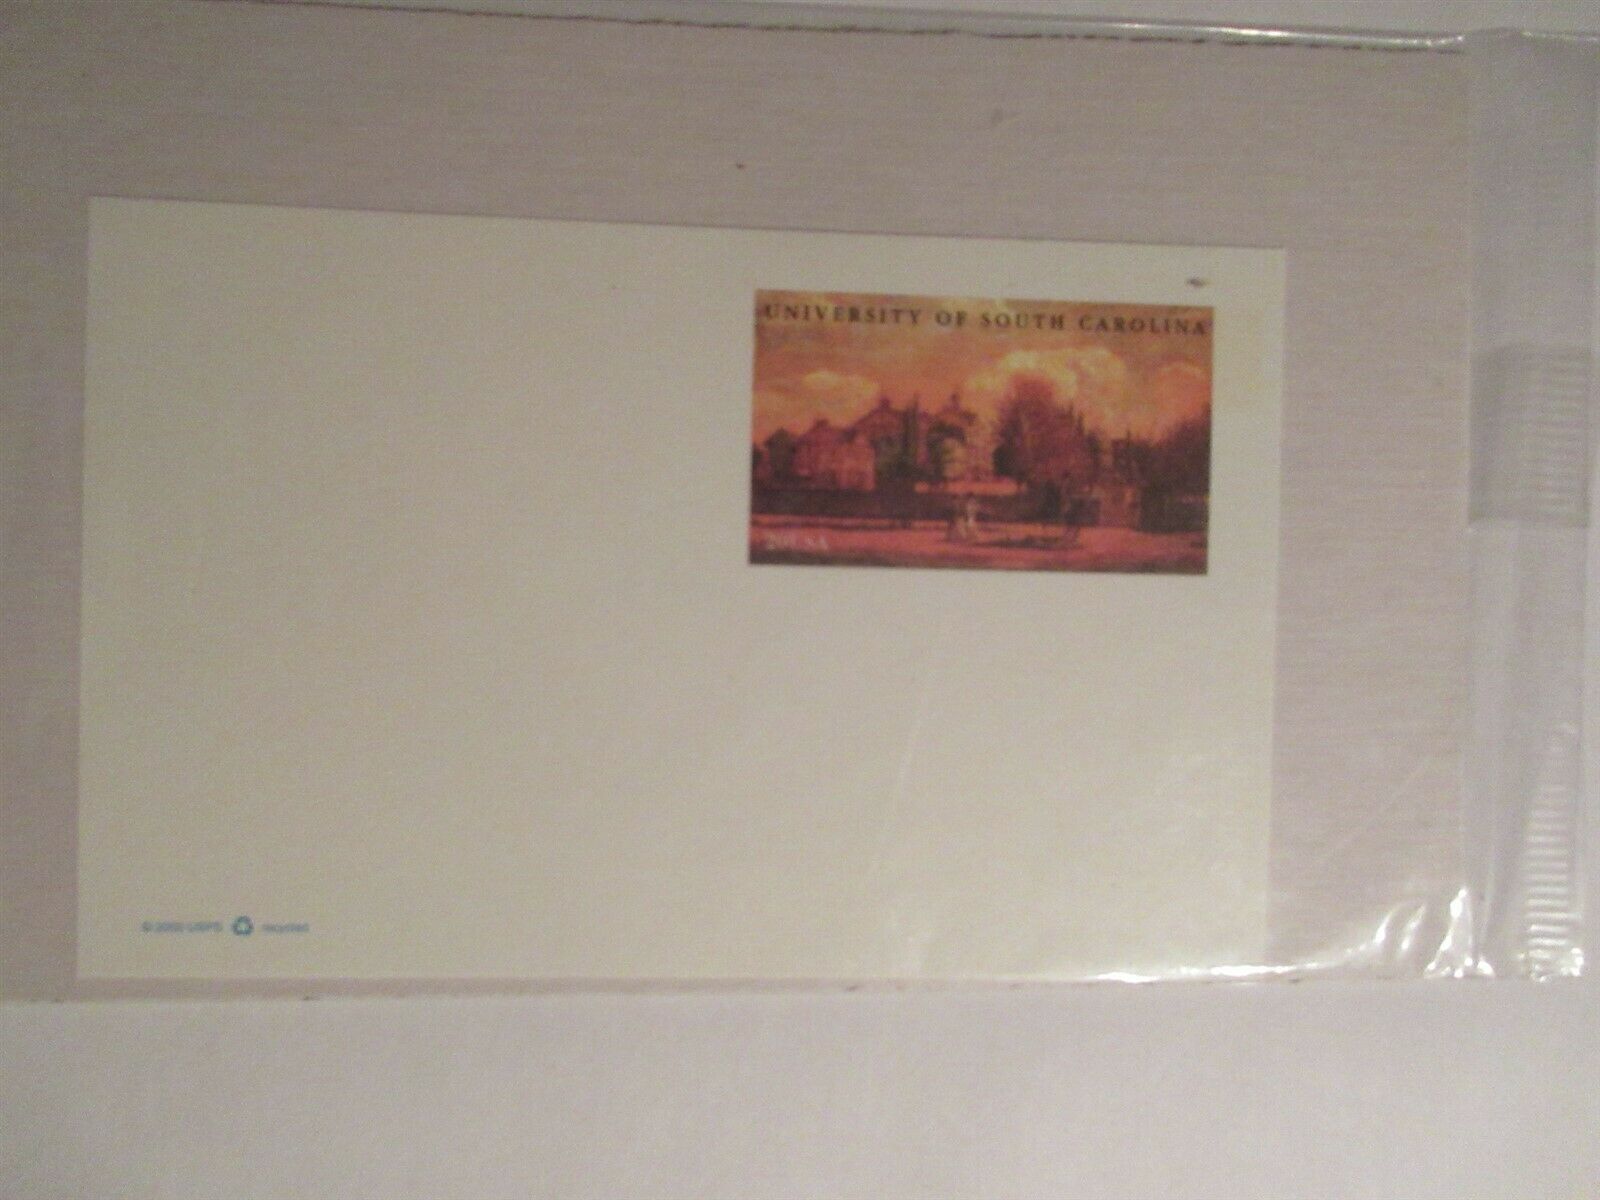 2000 Usps University Of South Carolina 20 Cent Postcard